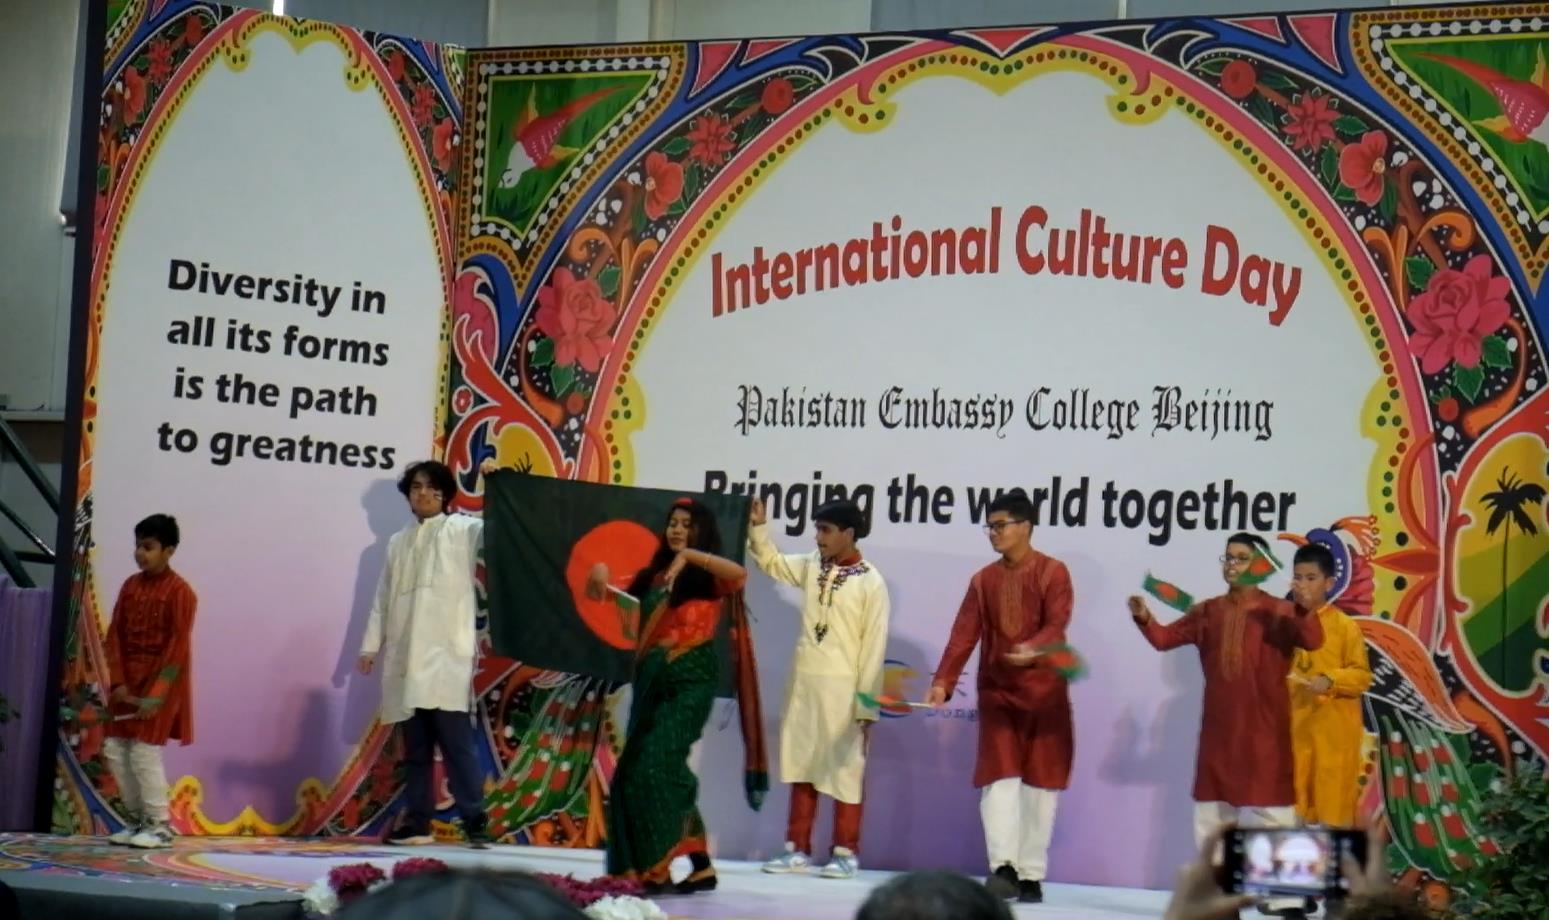 巴基斯坦使馆国际文化日活动唱响全世界各民族团结独立的主旋律